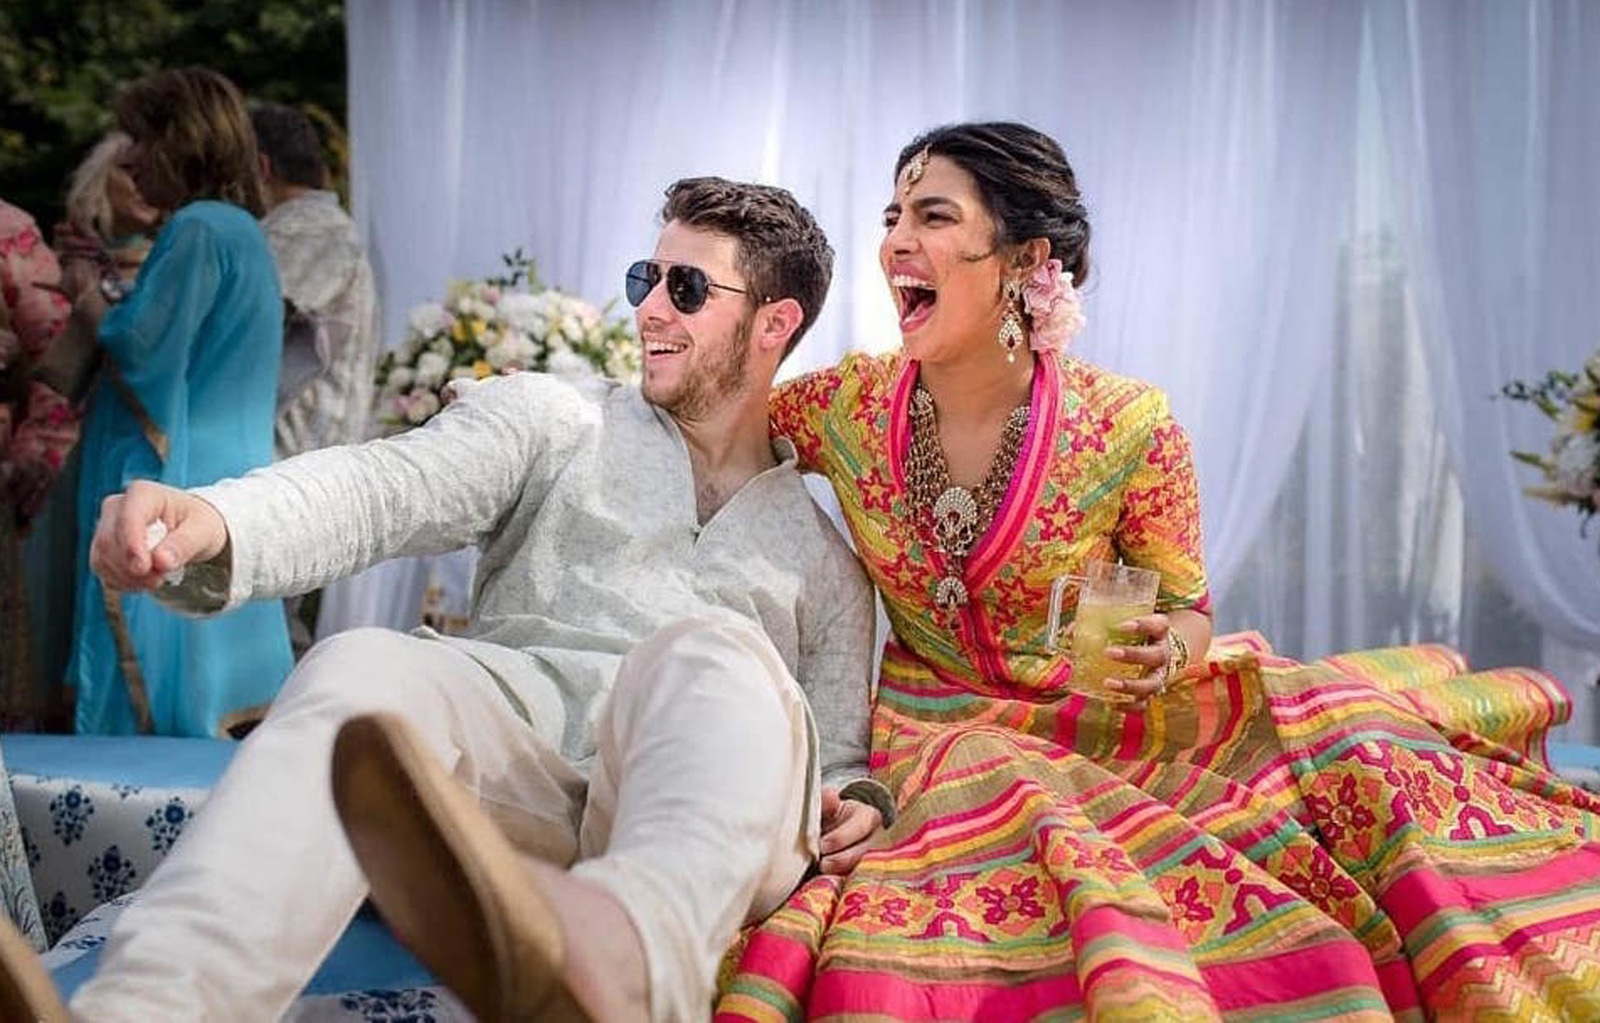 De lujo, la boda de Priyanka Chopra y Nick Jonas